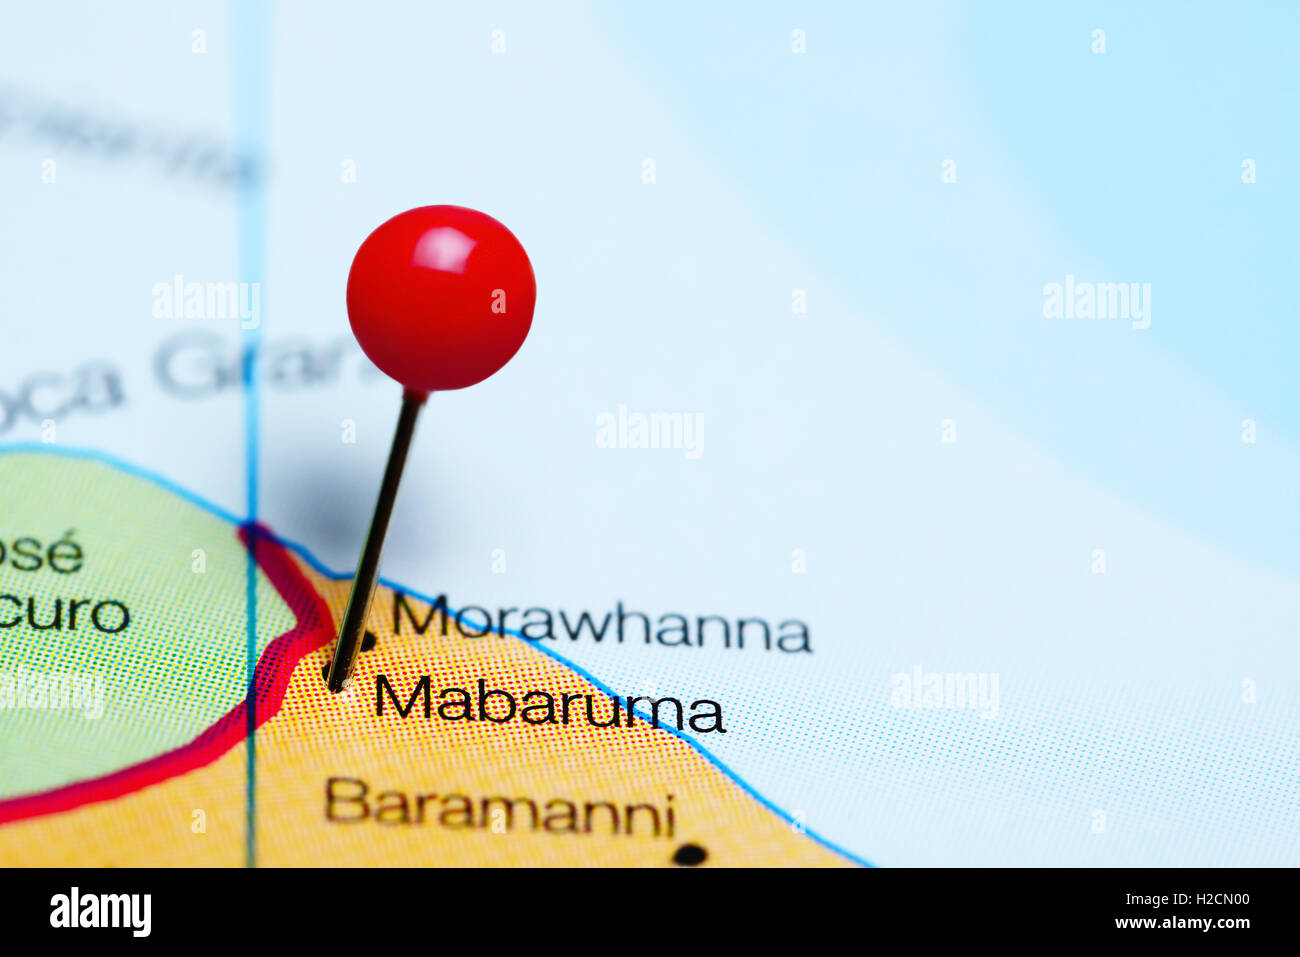 Mabaruma pinned on a map of Guyana Stock Photo